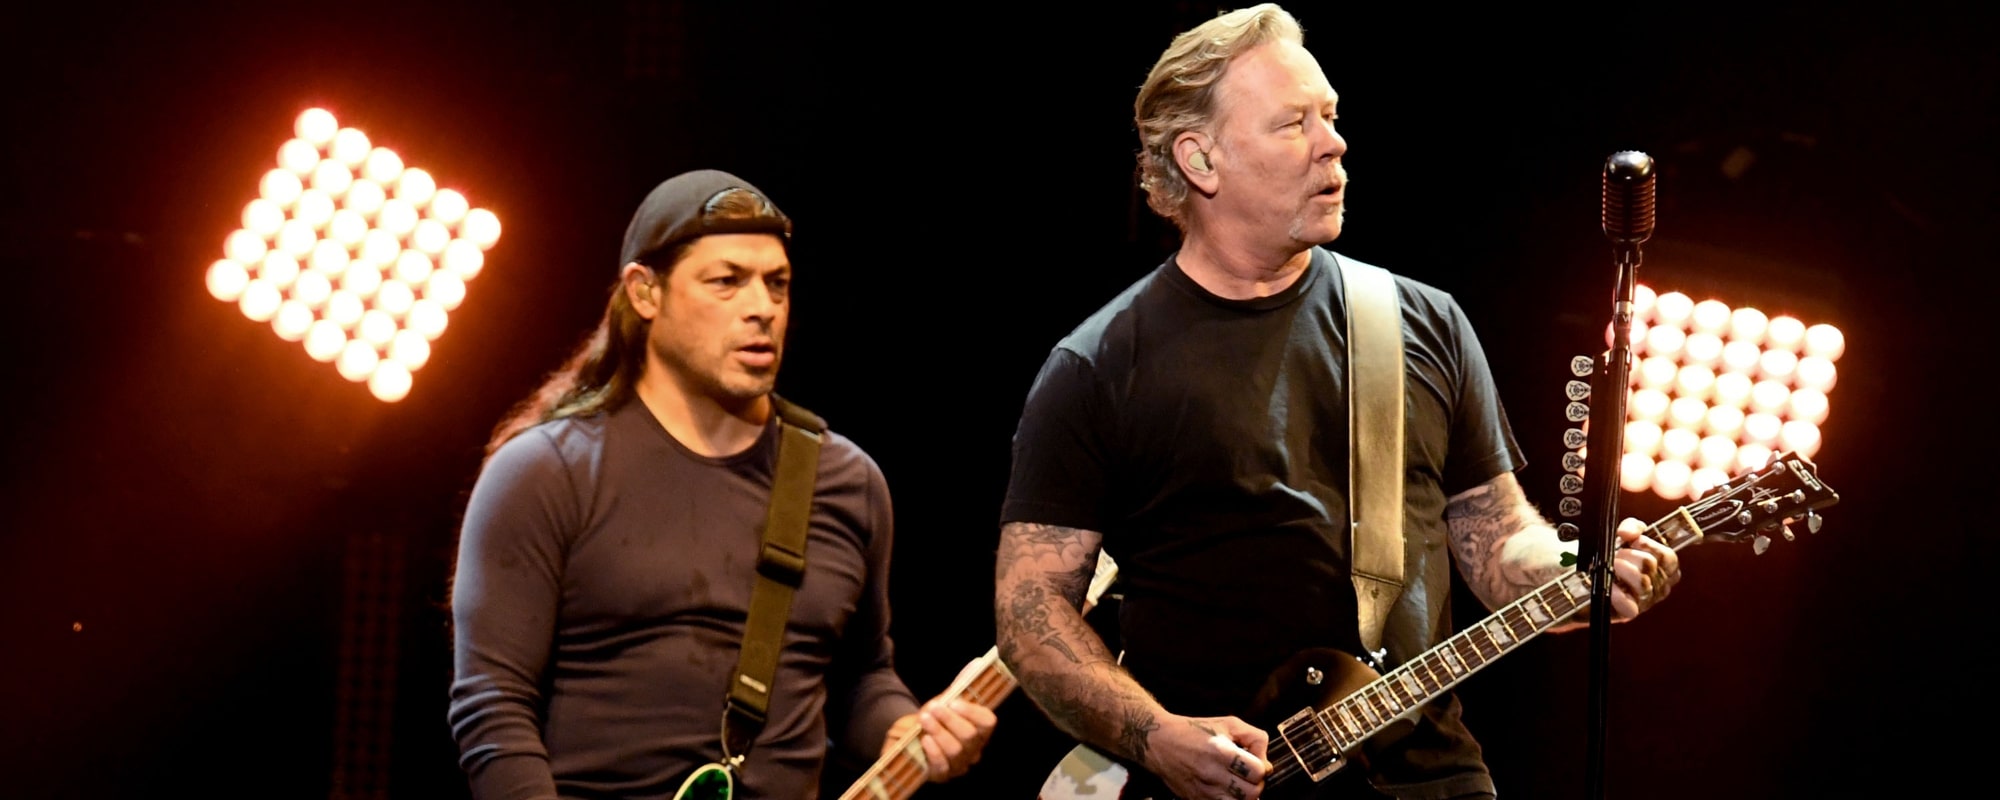 James Hetfield et Robert Trujillo, membres du groupe Metallica, réfléchissent à 2023 et révèlent leurs plans pour la nouvelle année